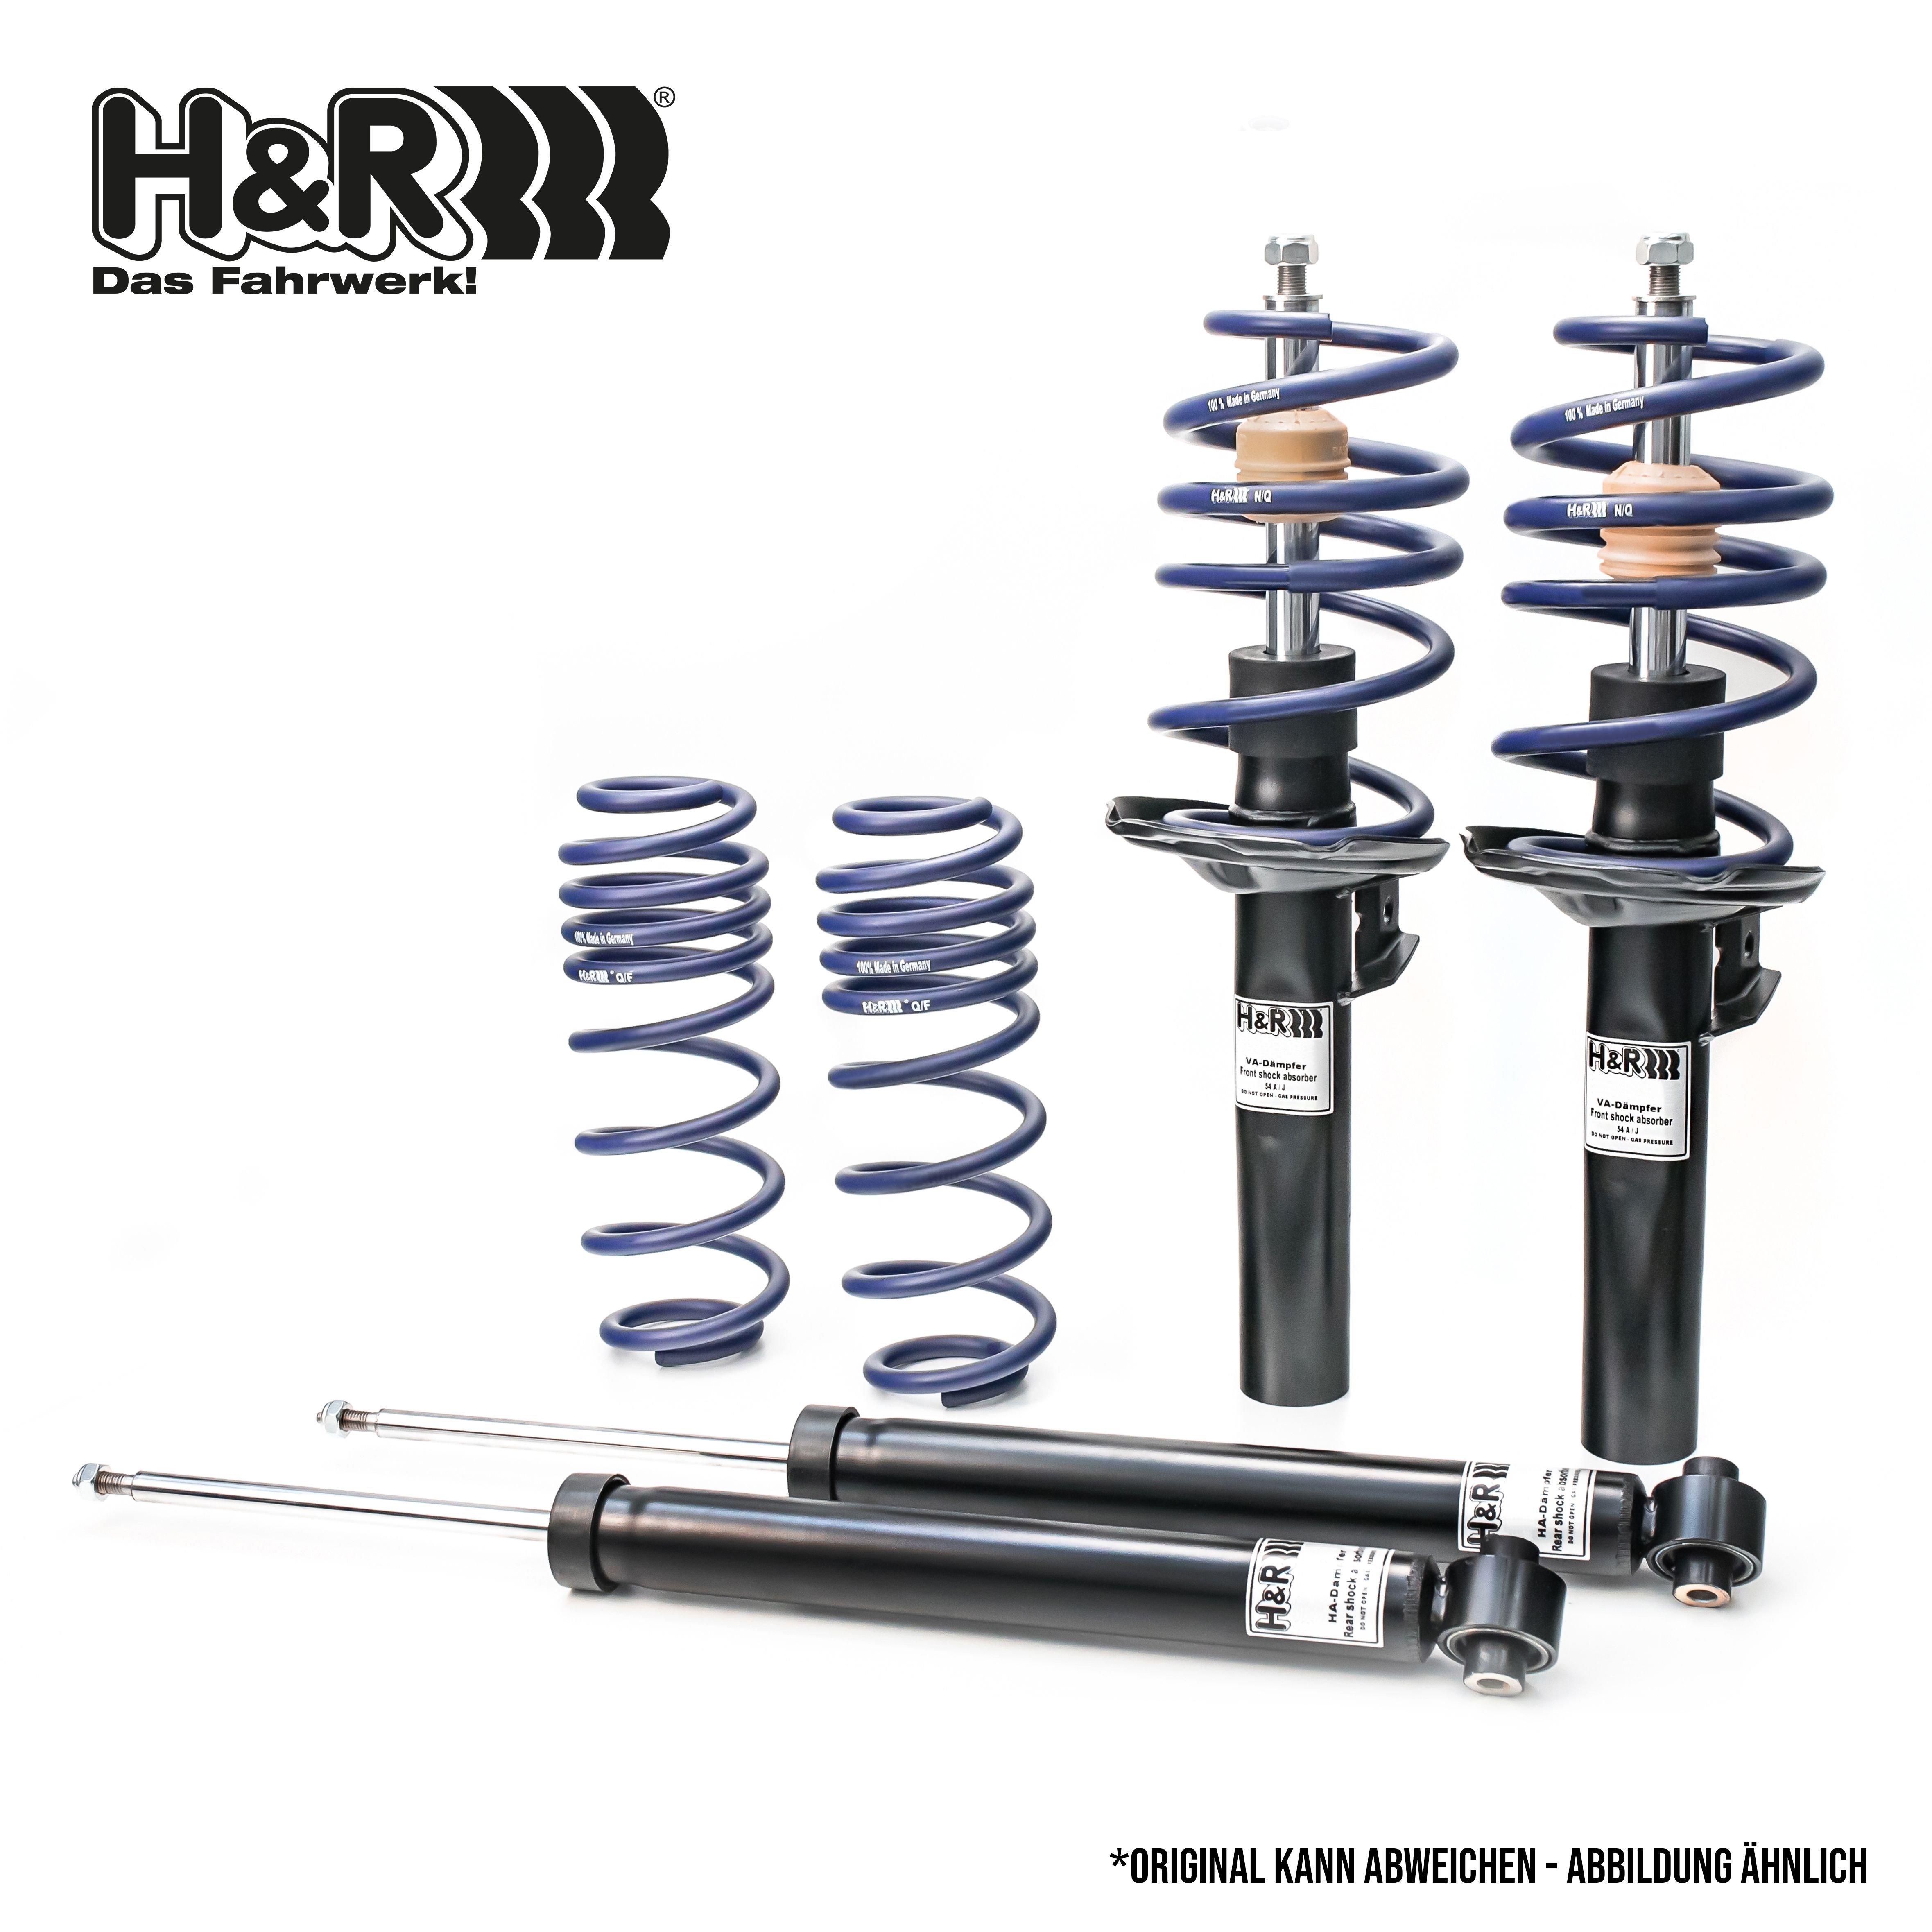 H&R Shock absorber set 40971-1 buy